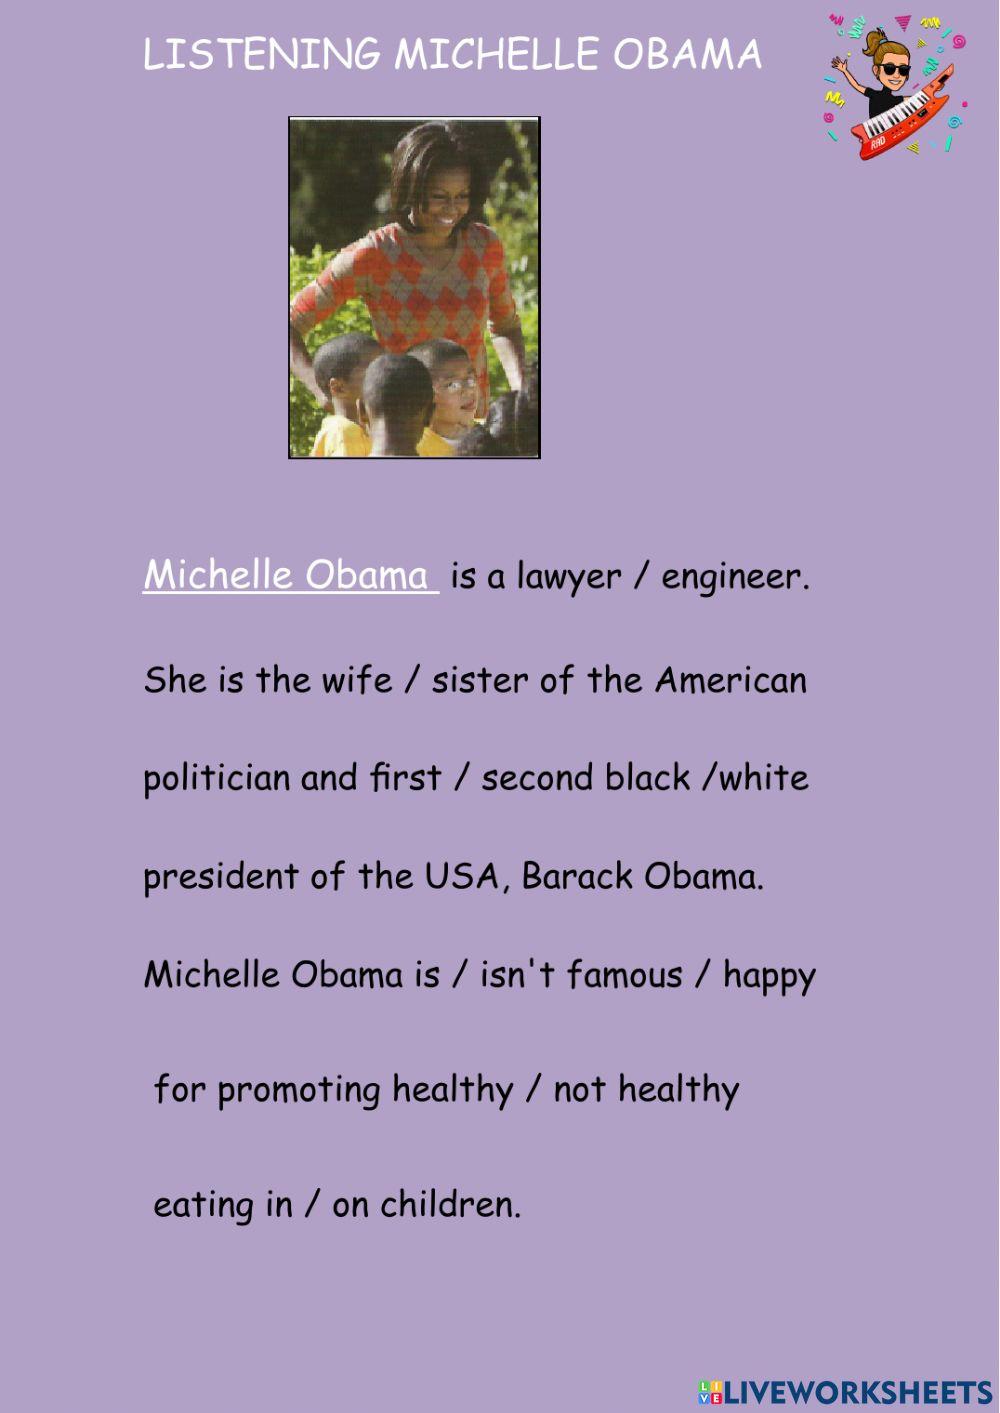 Michelle Obama listening